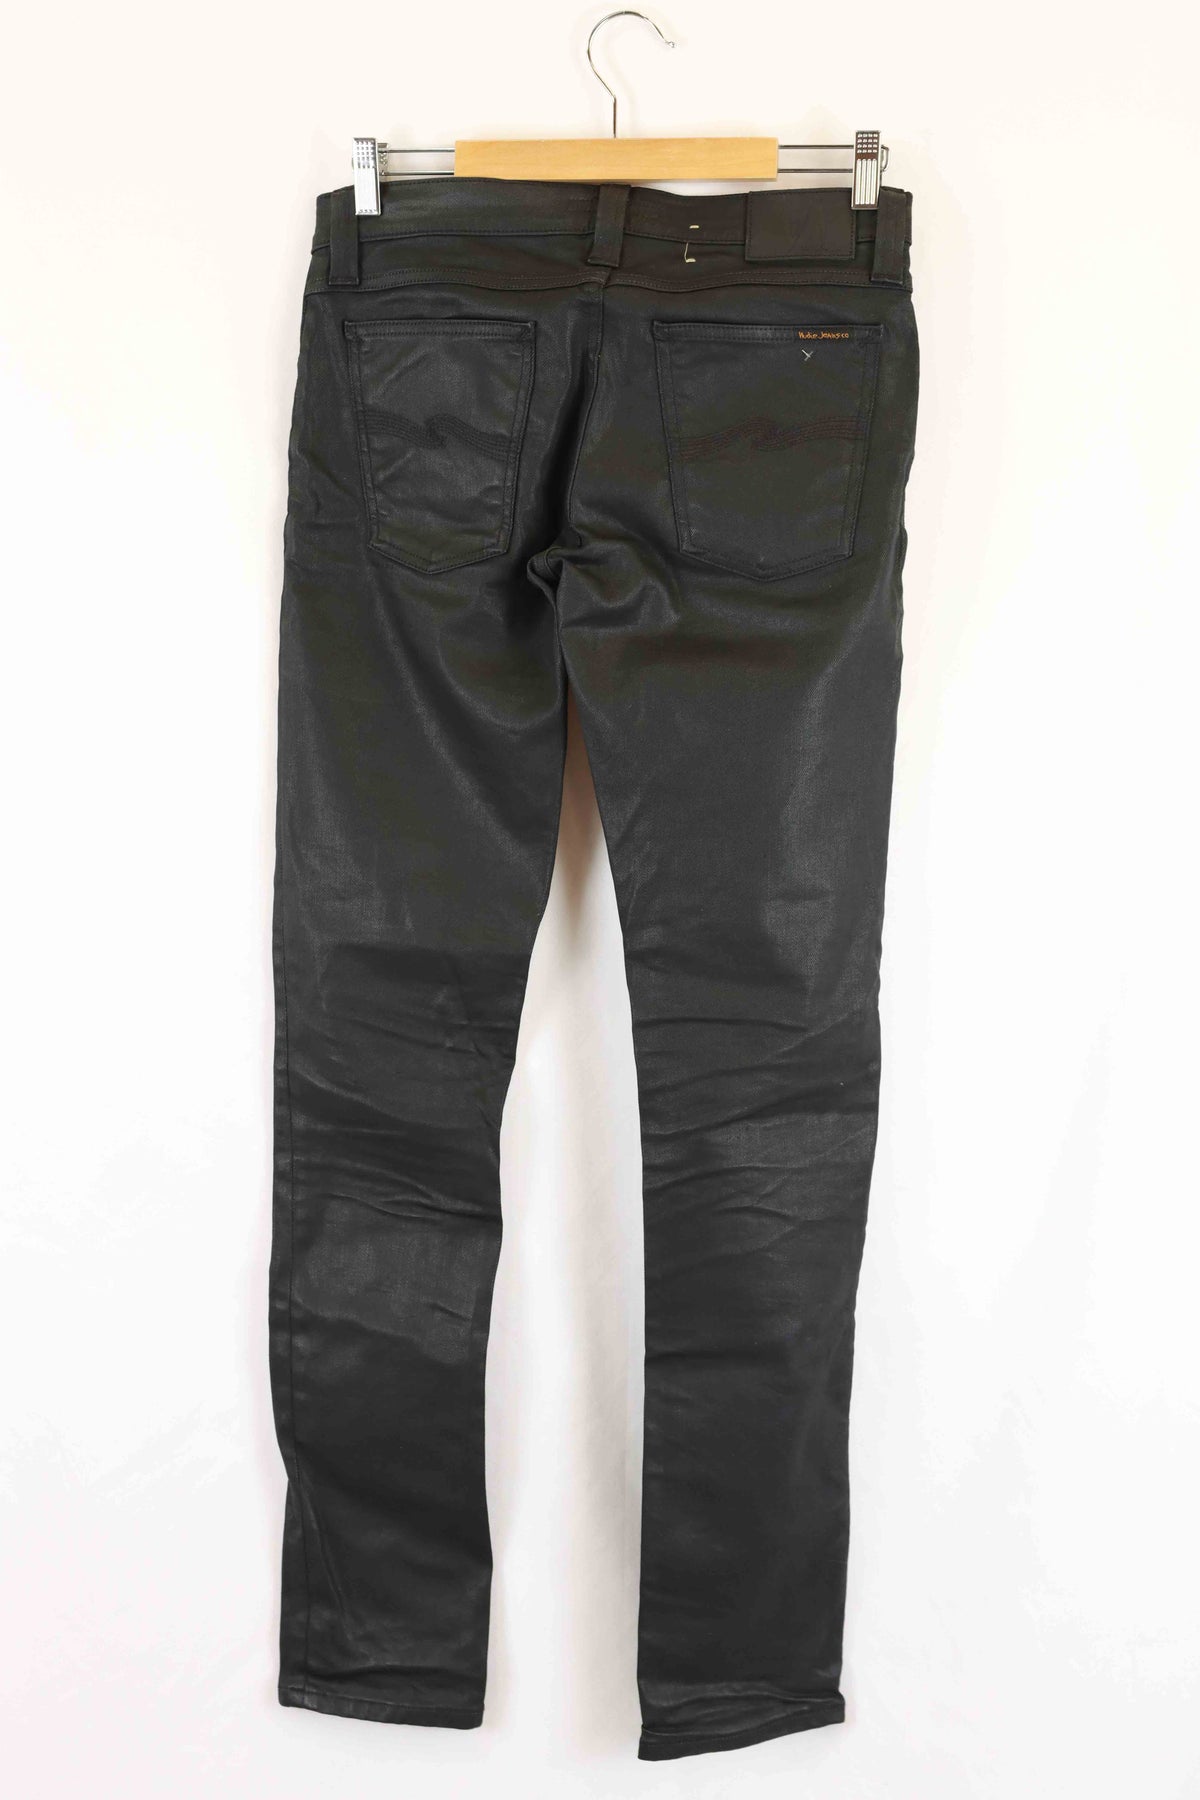 Nudie Jeans Black Leather Denim Skinny Jeans 29